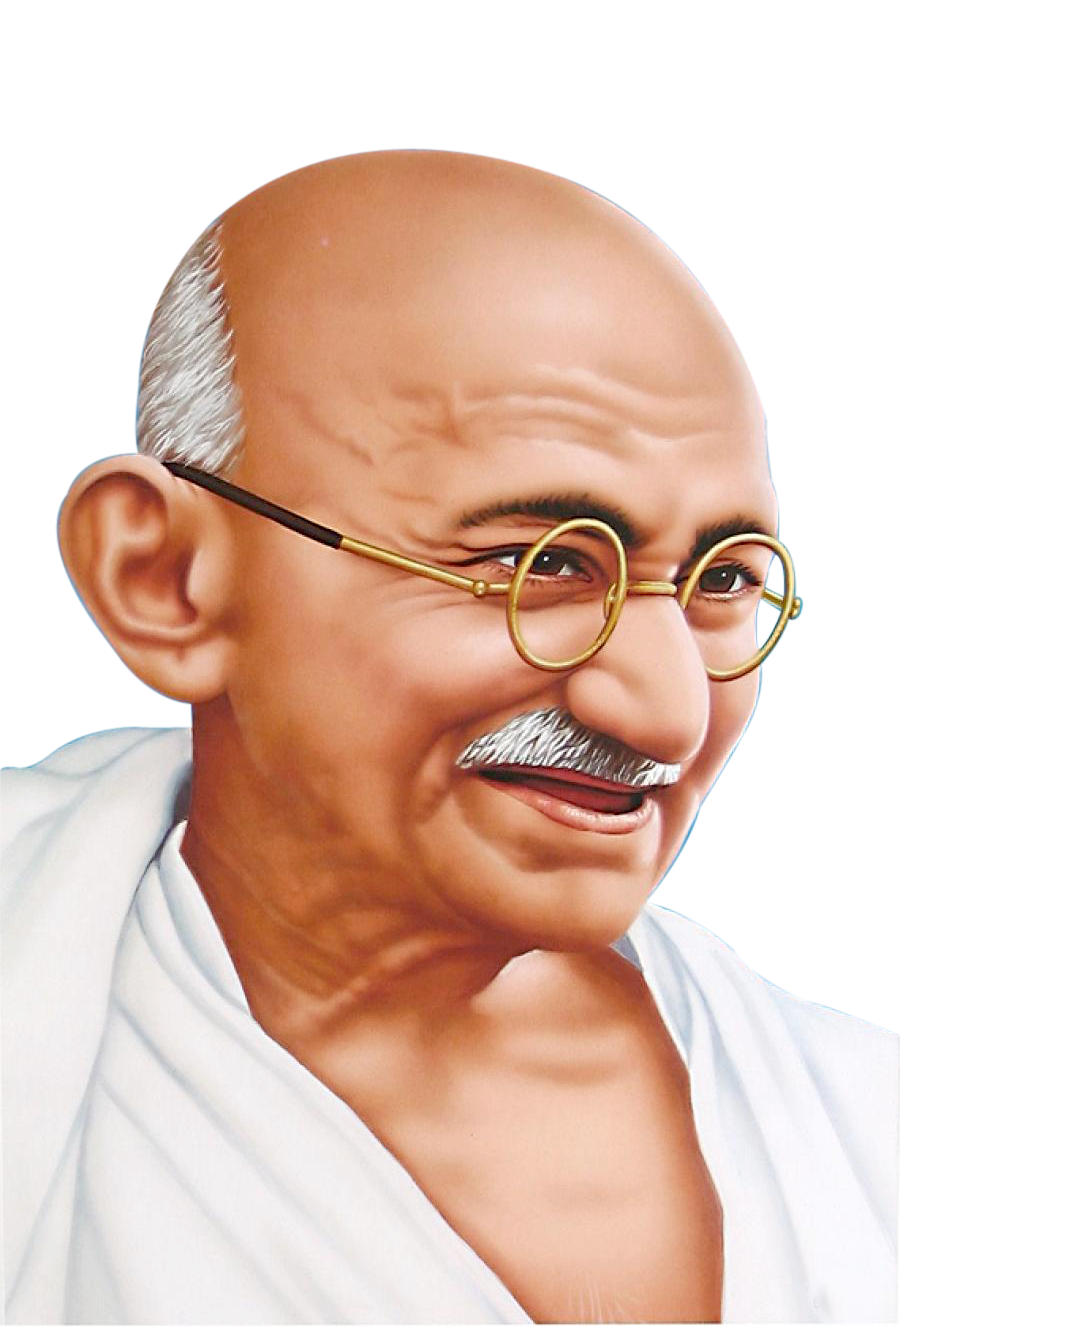 Mahatma Gandhi PNG images Download 